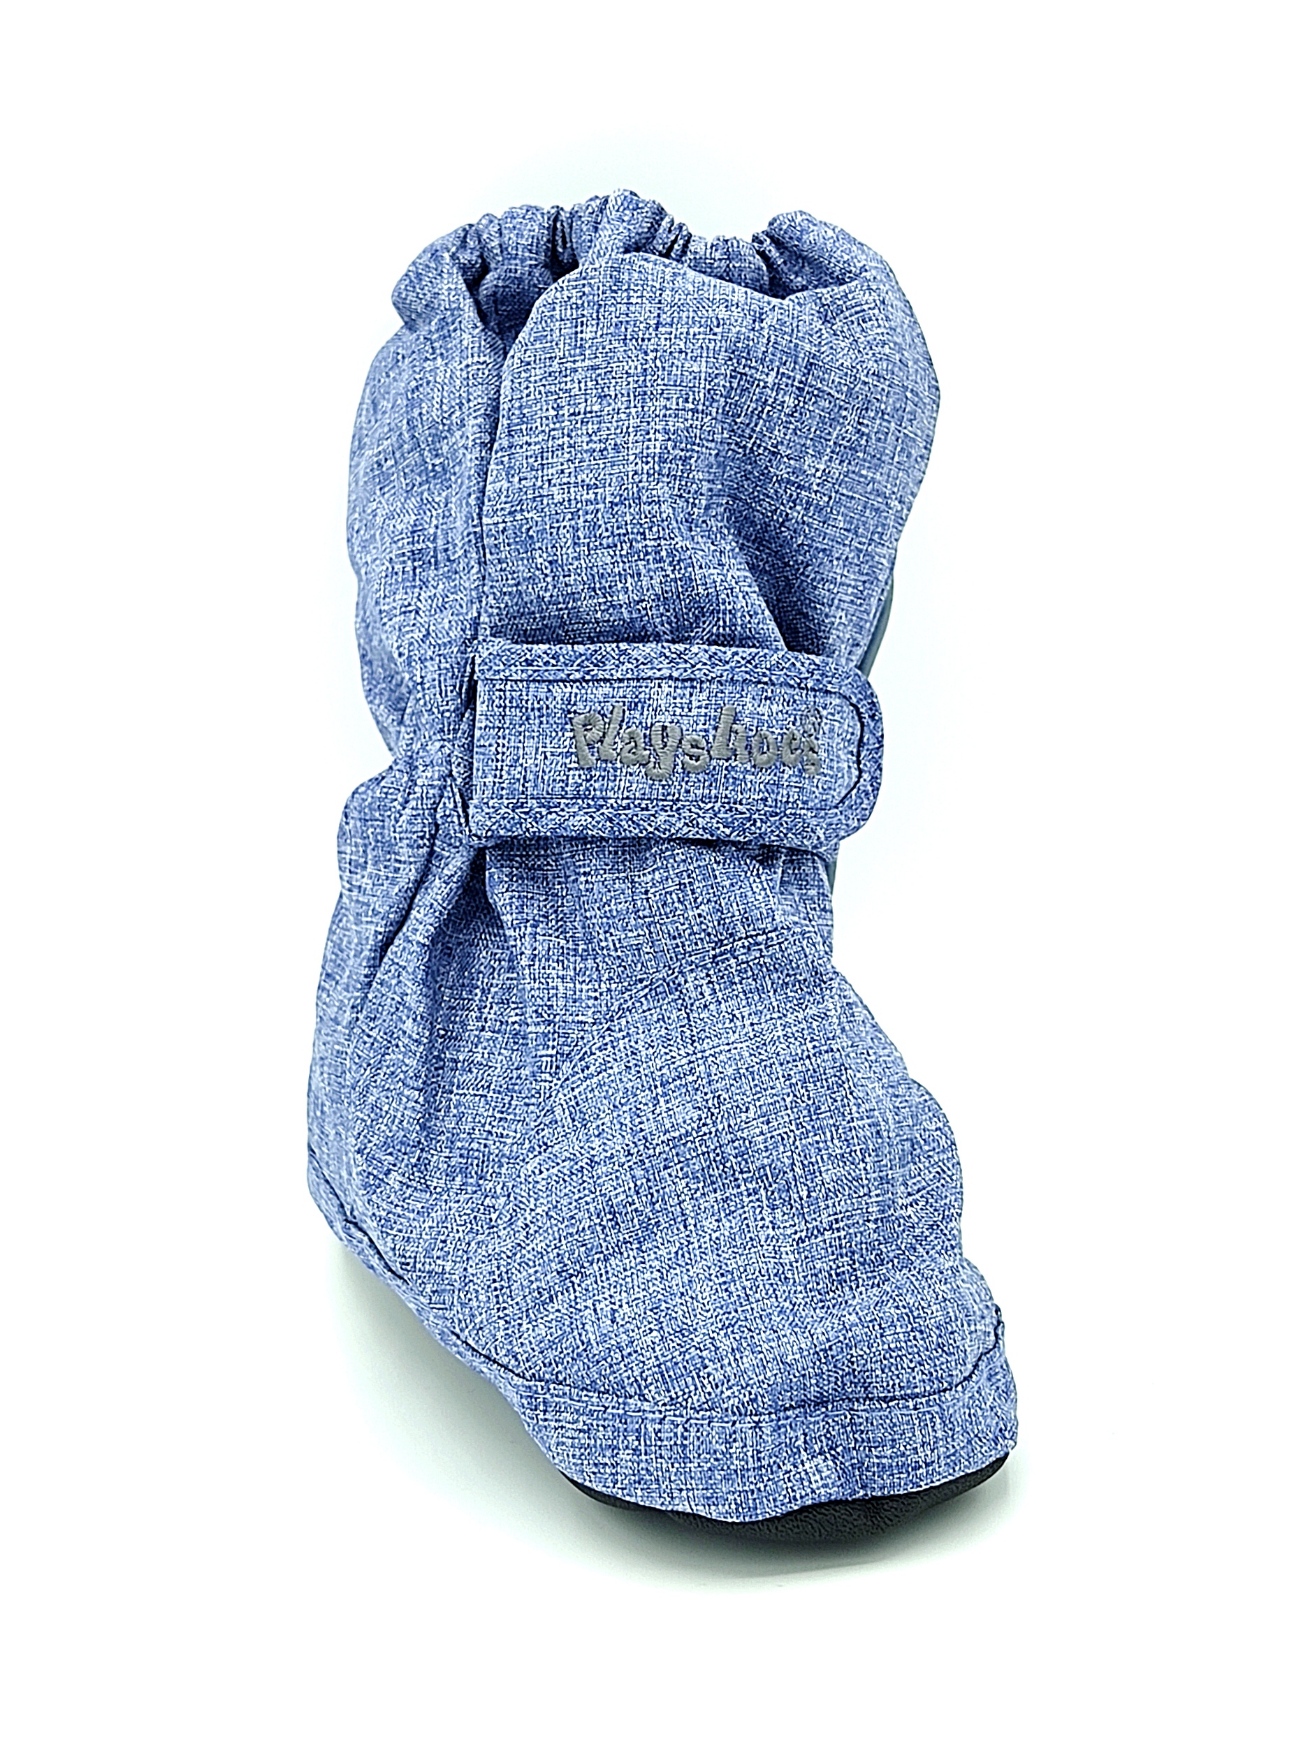 surchaussure Thermo Booties doublée en polaire playshoes 194002-3 bleu jean sur la boutique Liberty Pieds-2